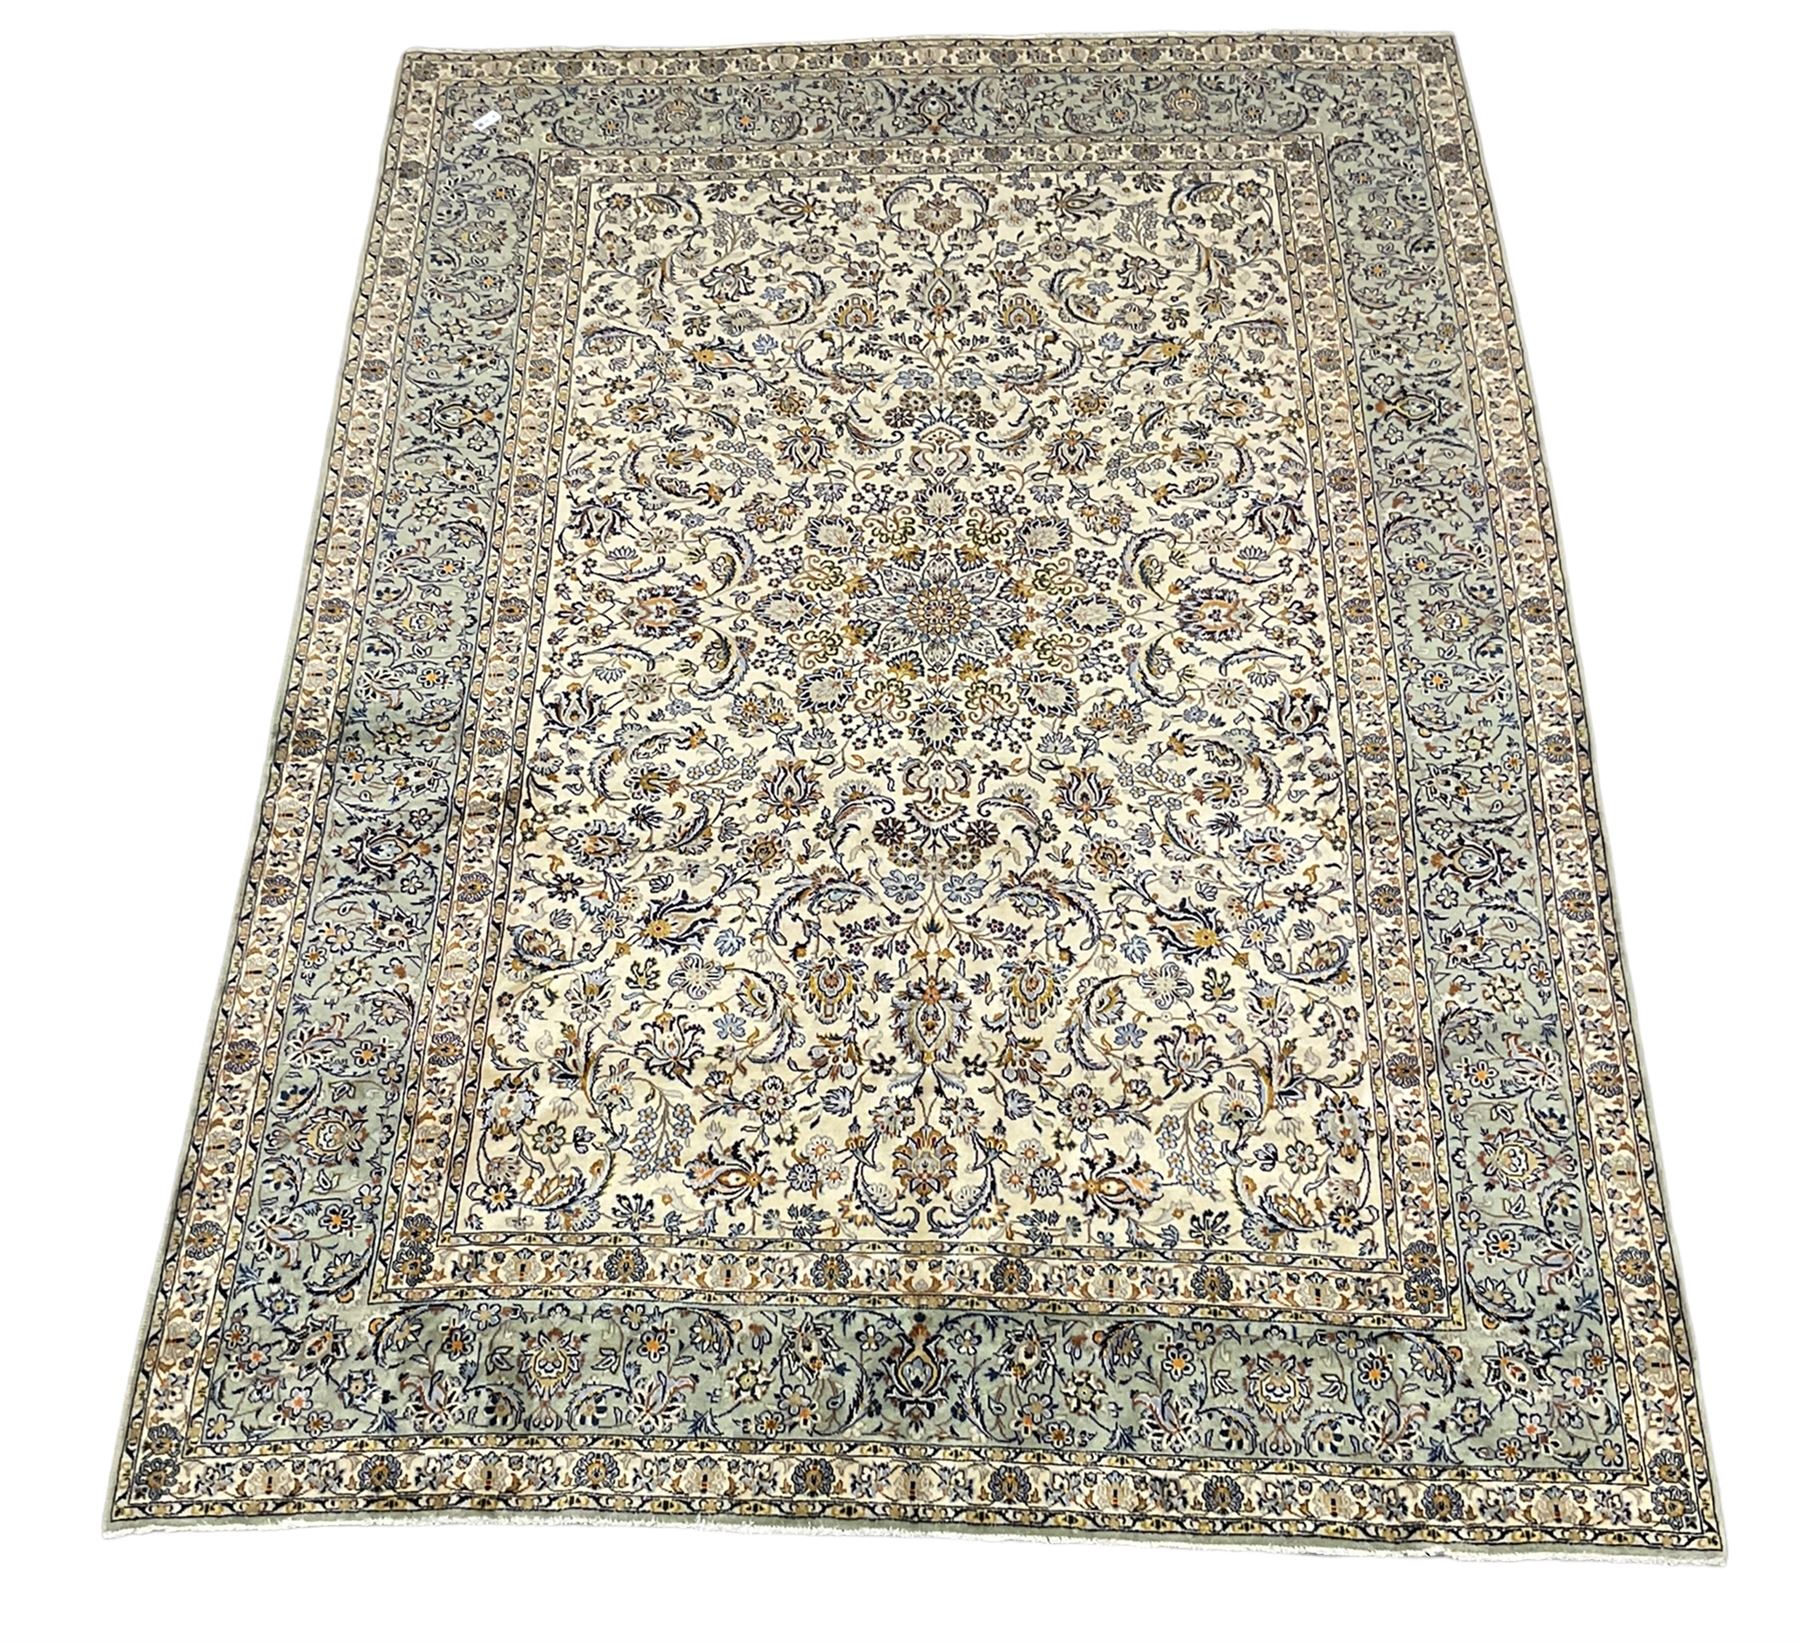 Persian Kashan ivory ground carpet